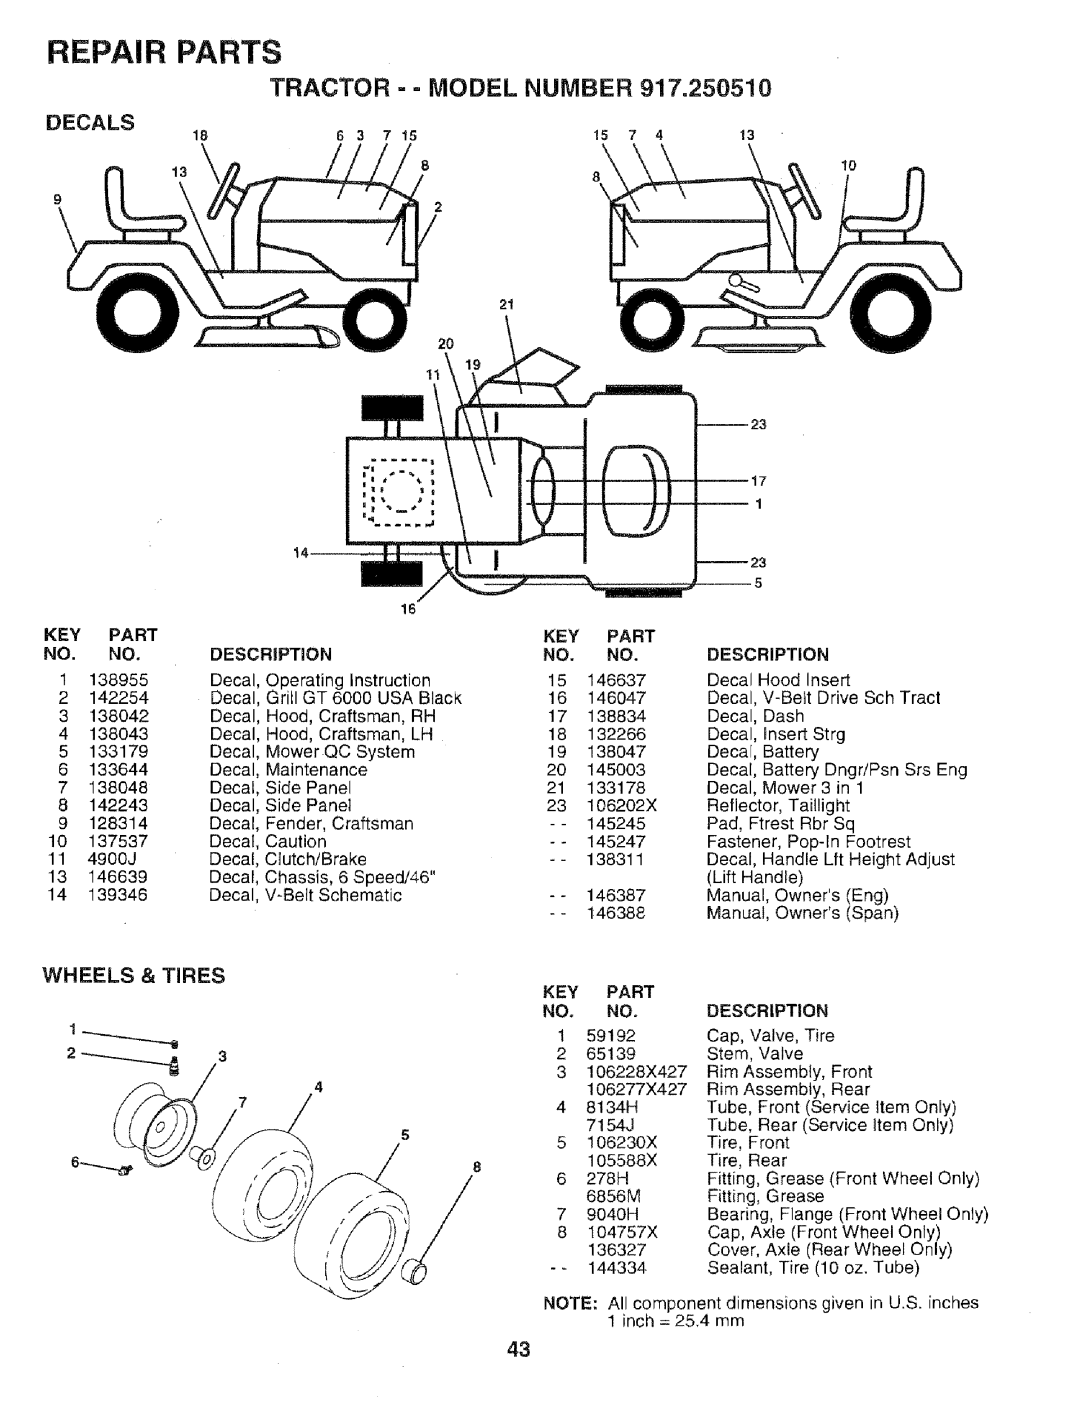 Sears 917.25051 manual Repair, Parts, Tractor = = Model Number, Decals, Key Part, Description 